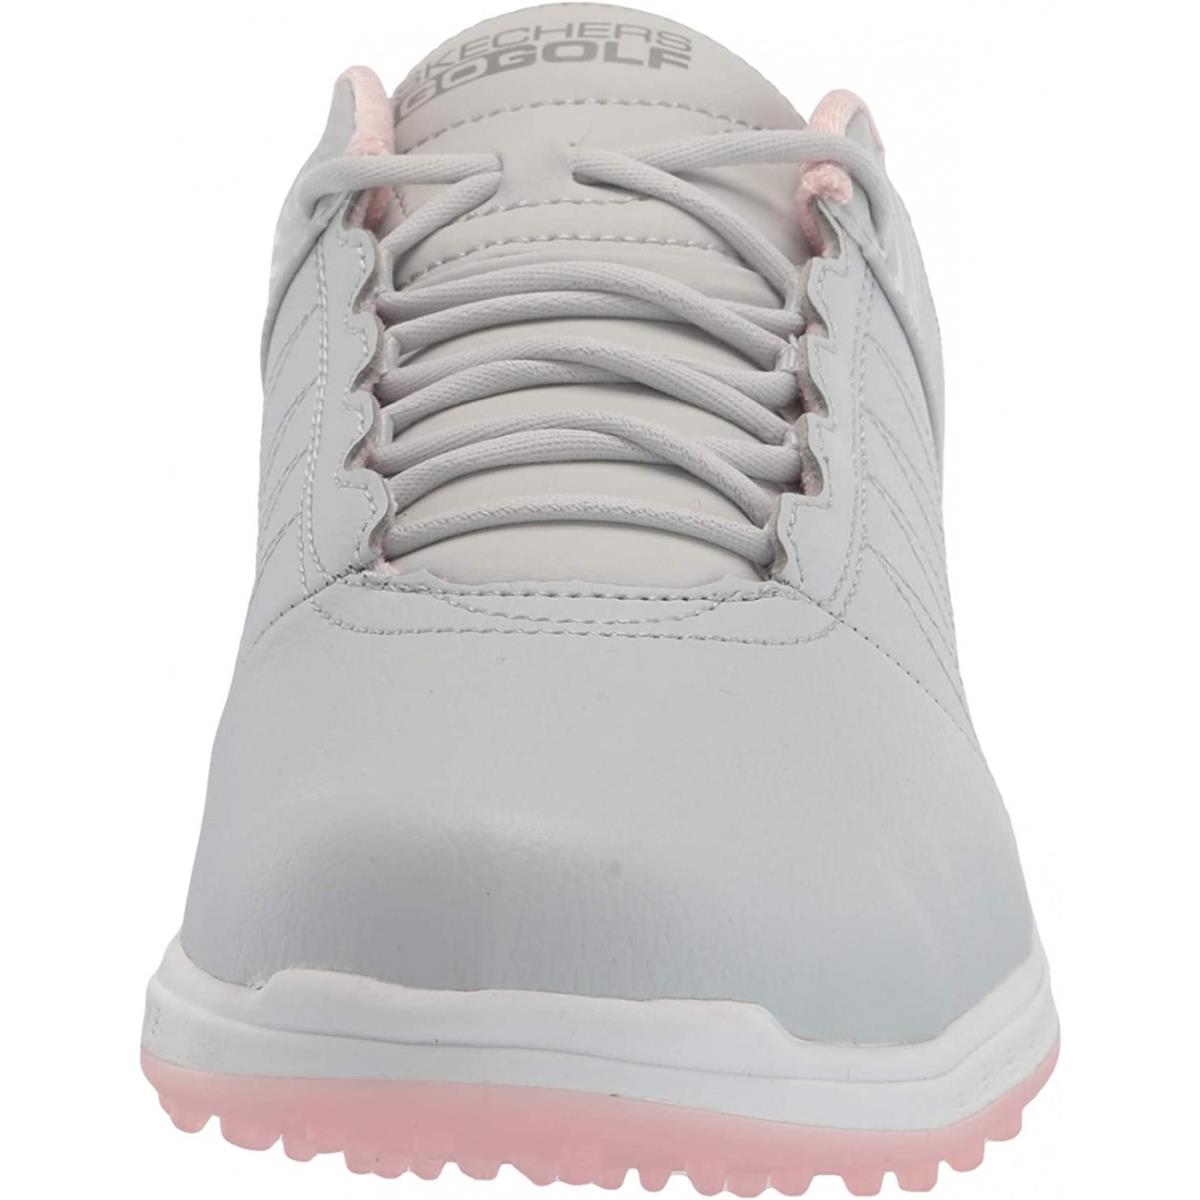 Skechers Women`s Go Pivot Spikeless Golf Shoe - Light Gray/Pink